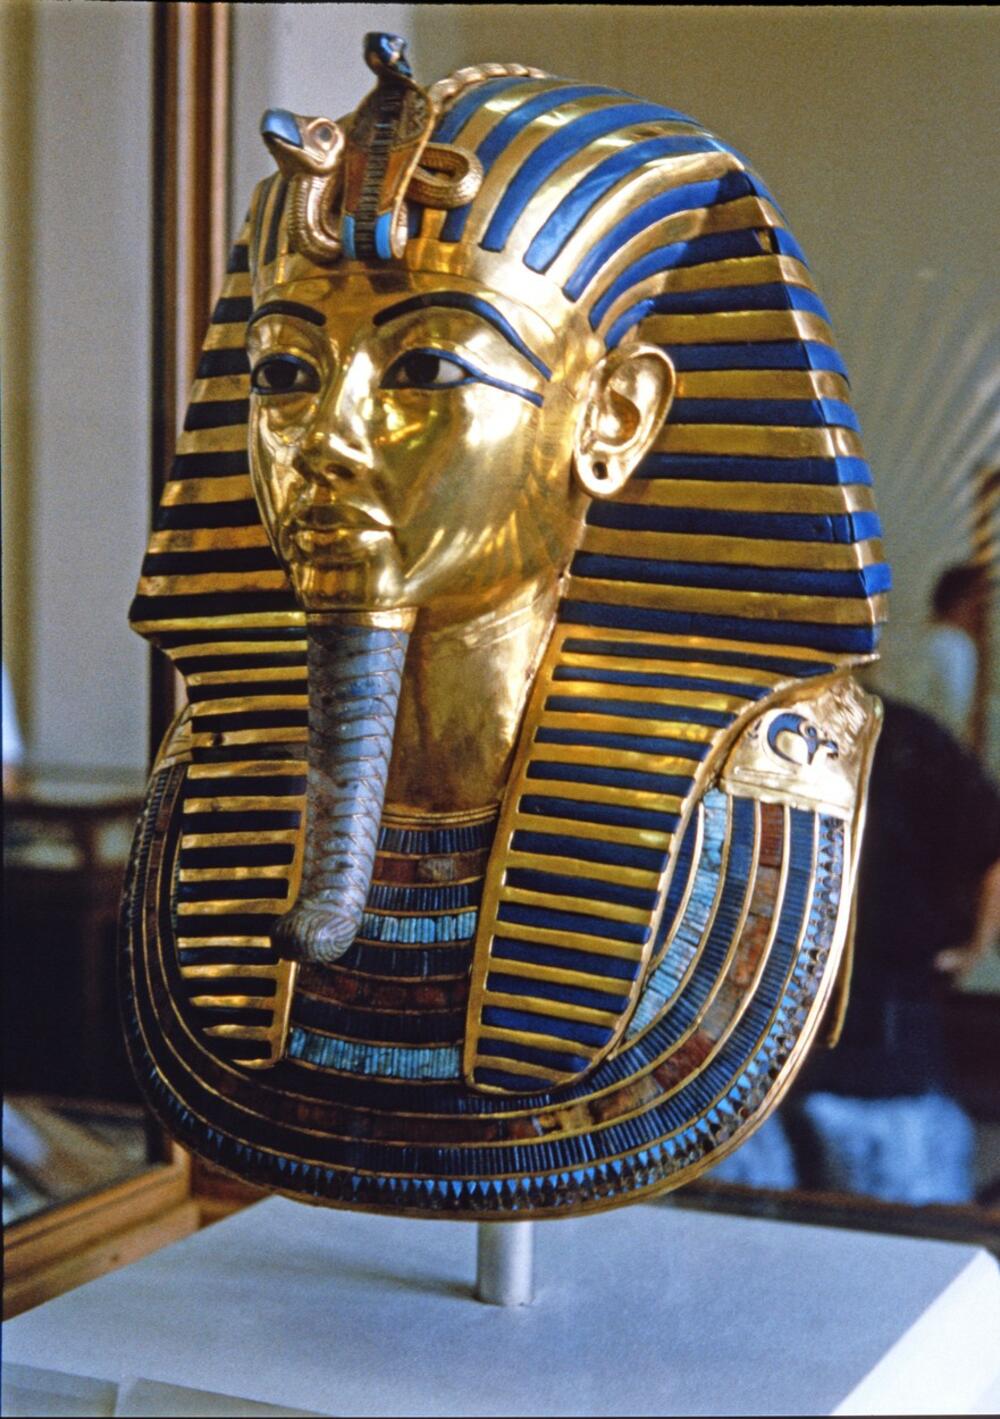 Tutankamonova zlatna maska najvredniji je predmet pronađen u njegovoj grobnici   